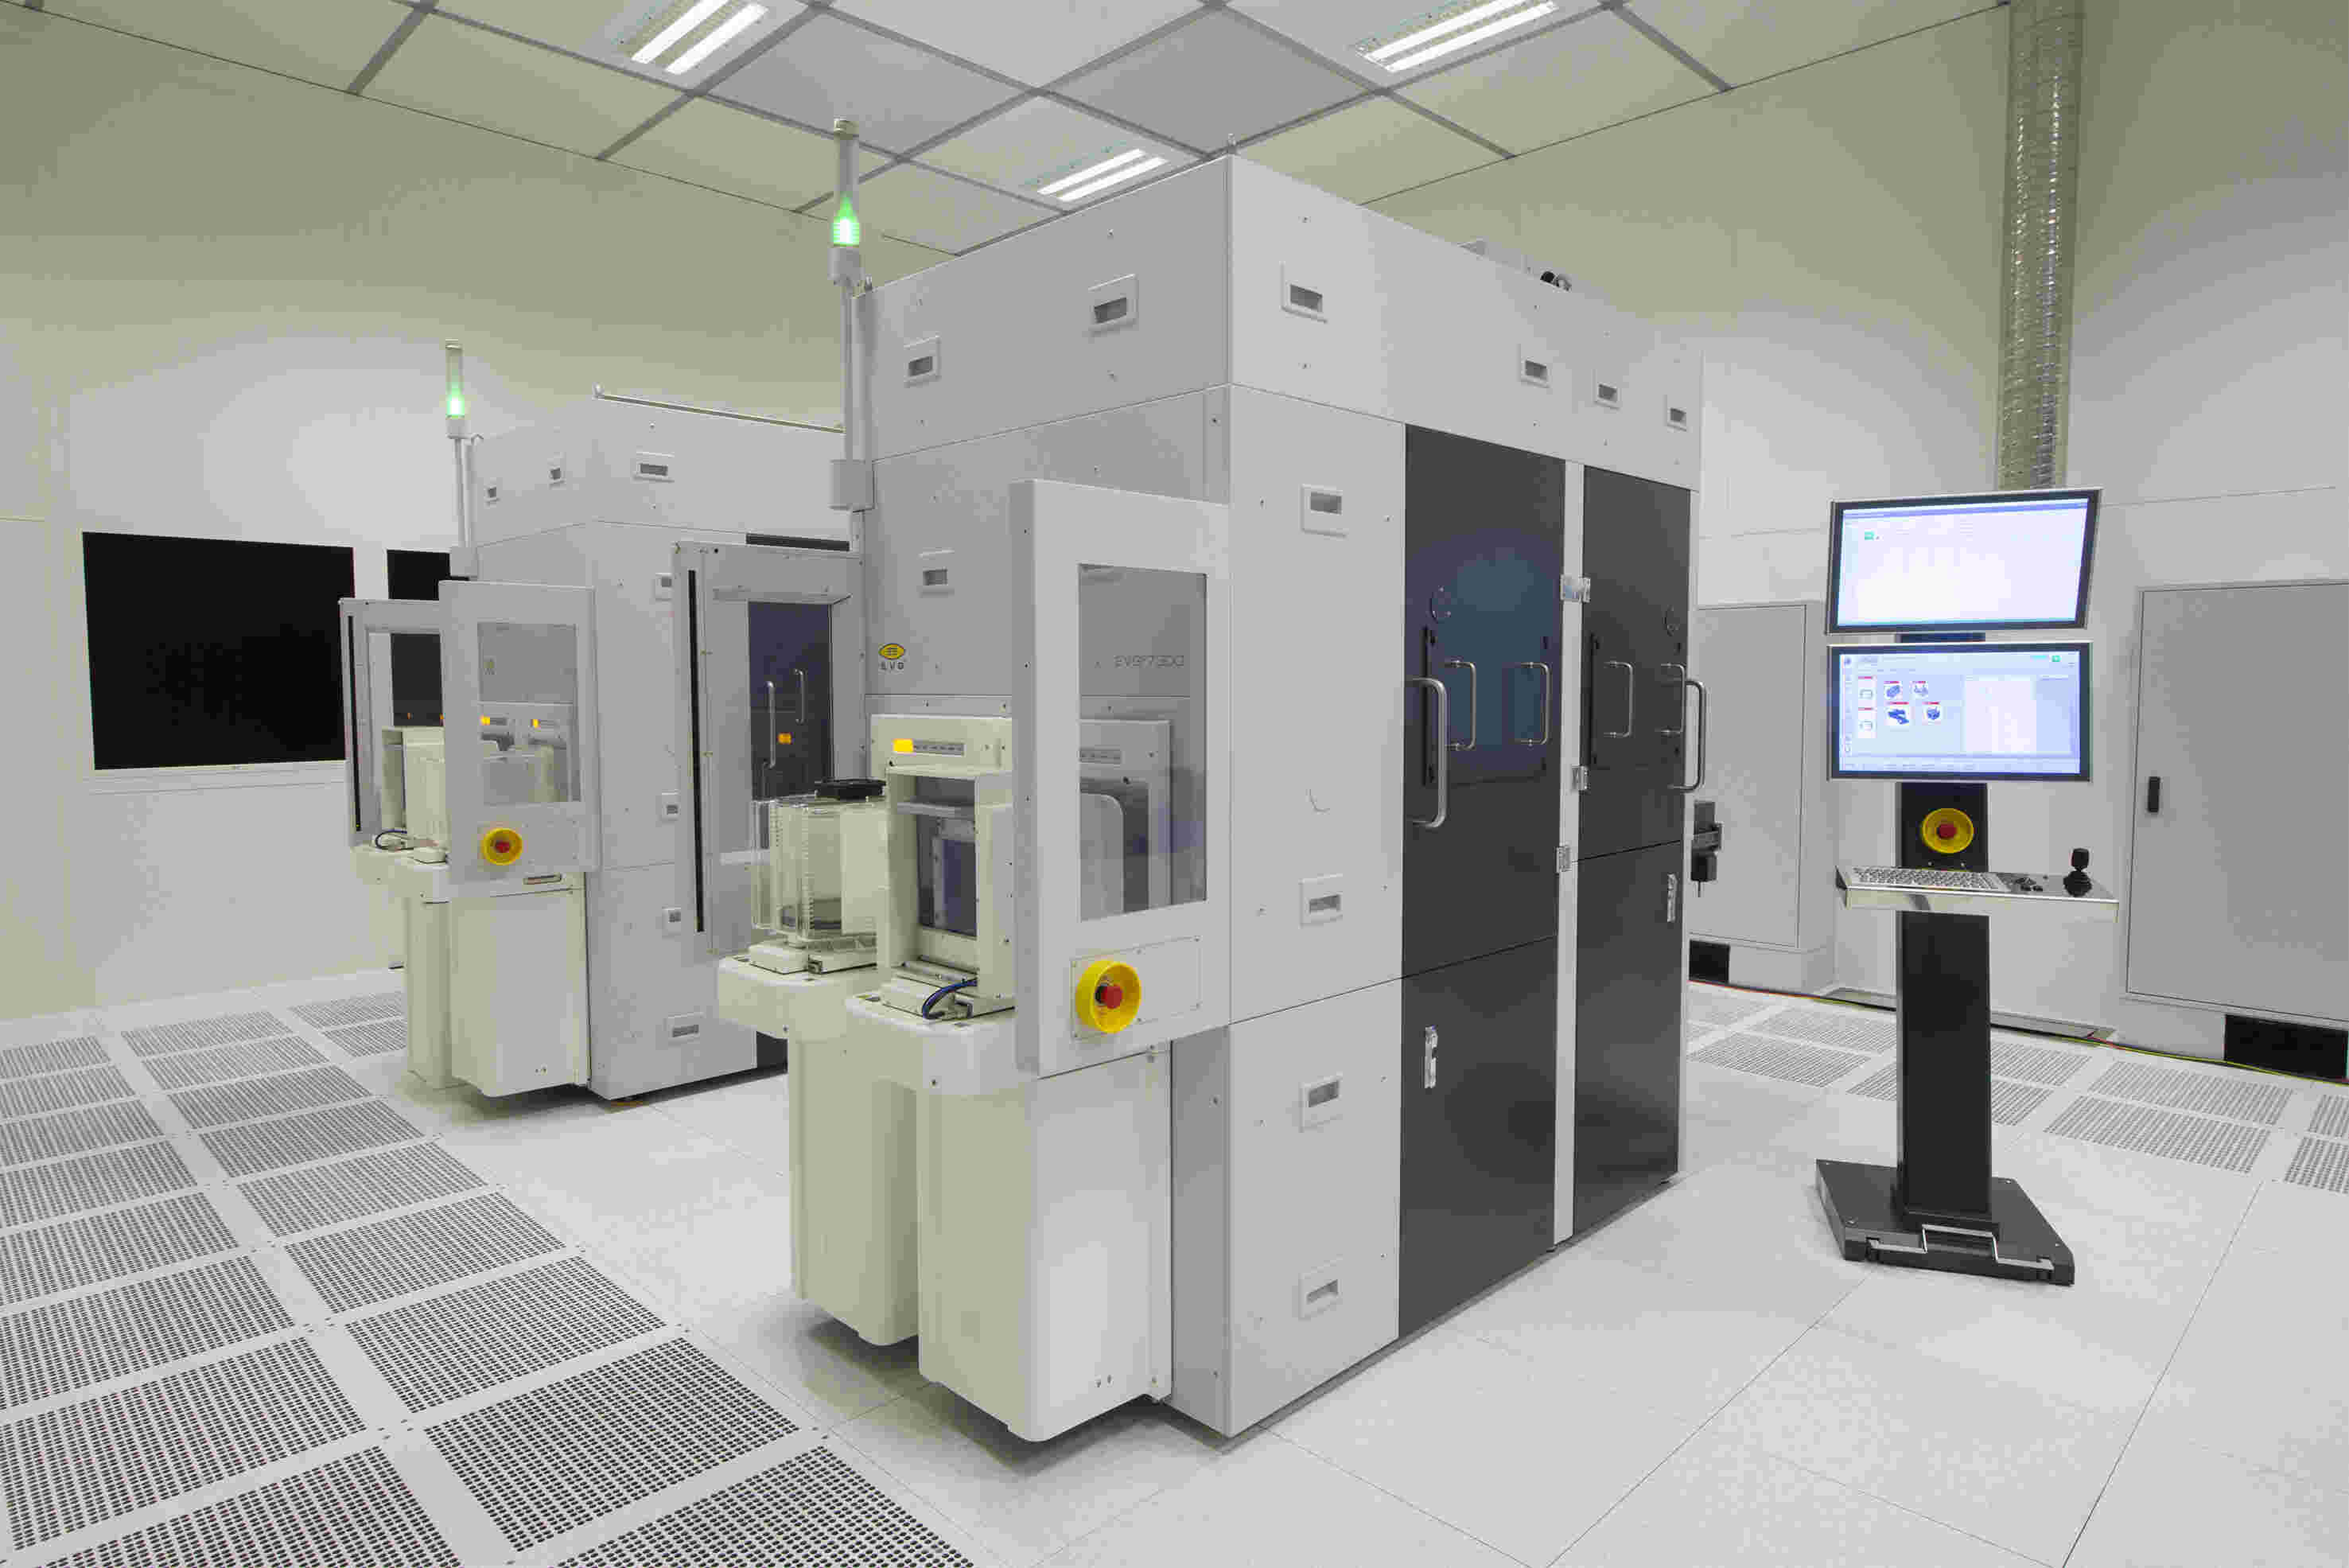 EVG®7300自动化SmartNIL®纳米压印与晶圆级光学系统在单个平台中结合了多种紫外线工艺技术，是一套先进的    多功能解决方案。